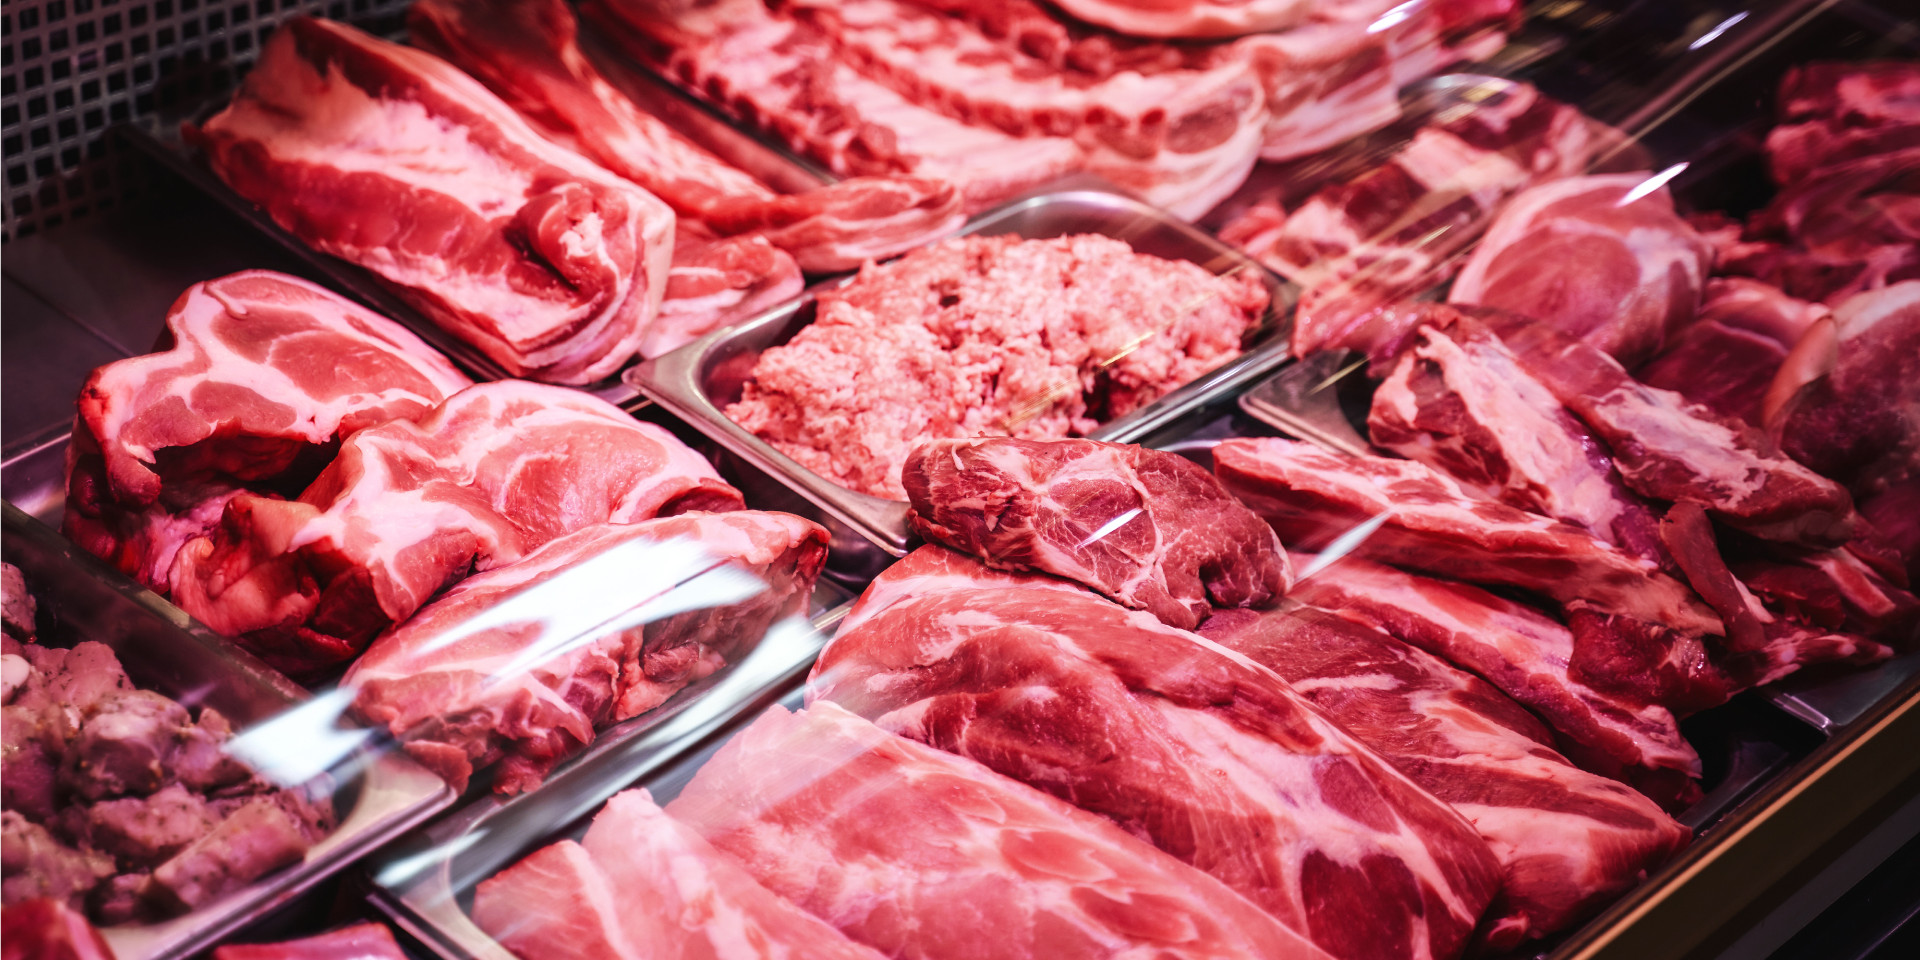 La caída de la demanda restringe el precio de la carne